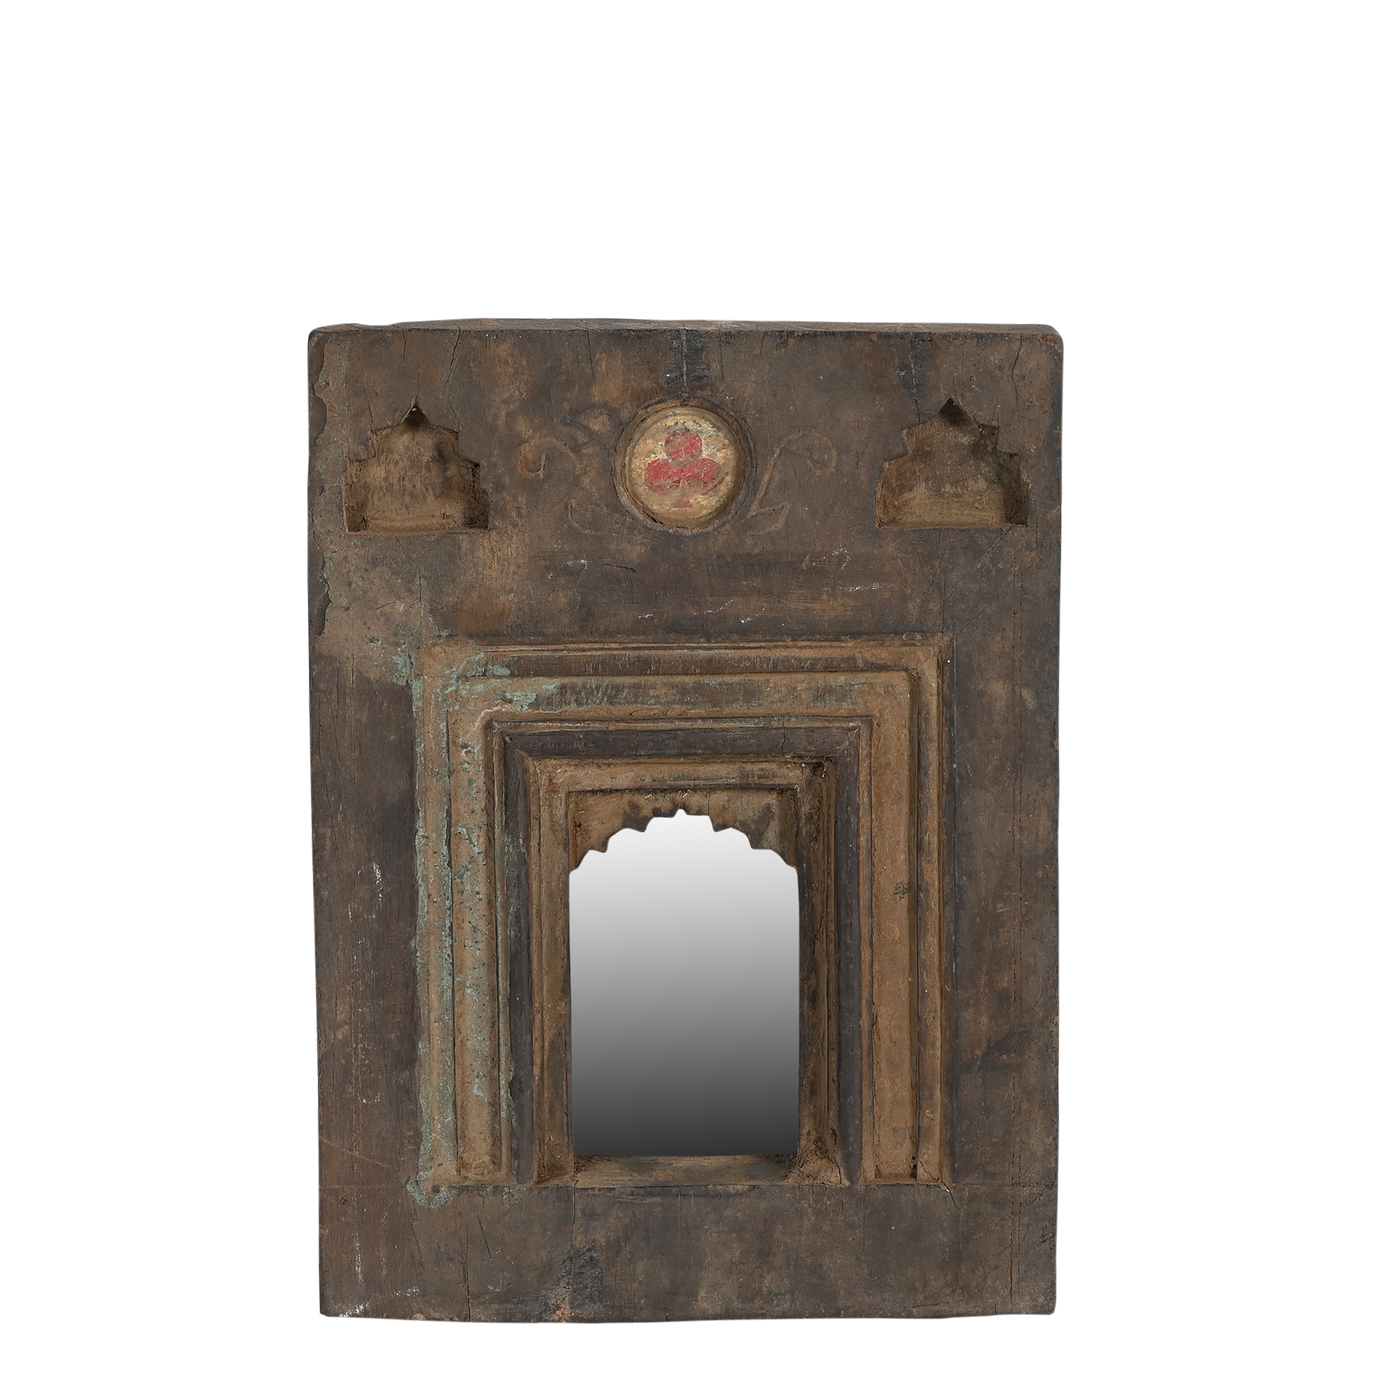 Mandir - Temple mirror n ° 52